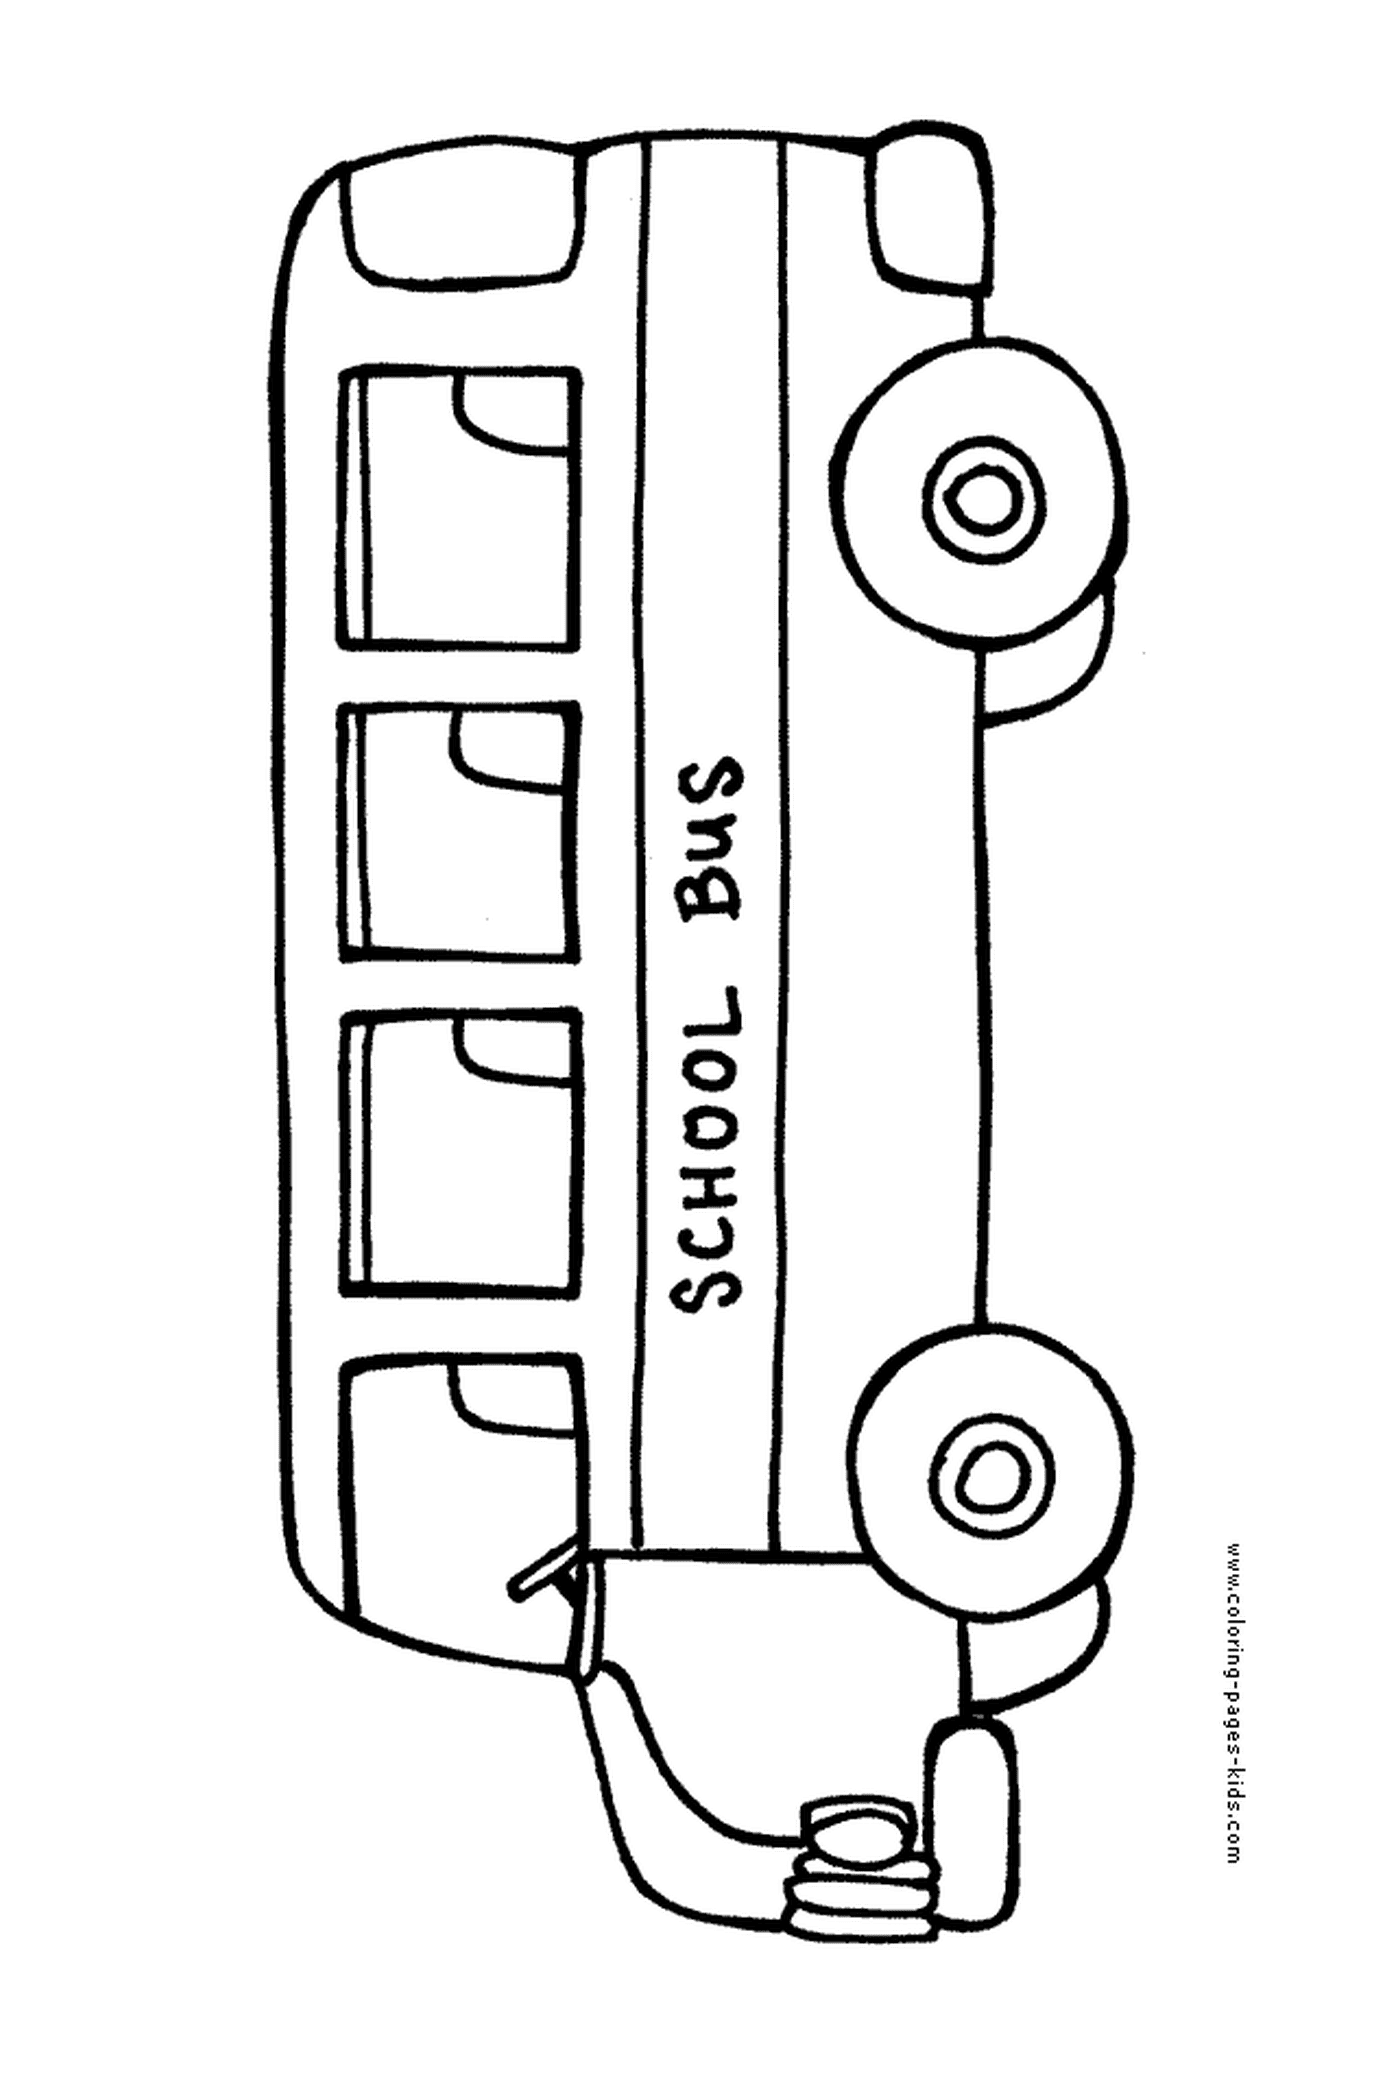  Um ônibus escolar está se movendo lentamente 